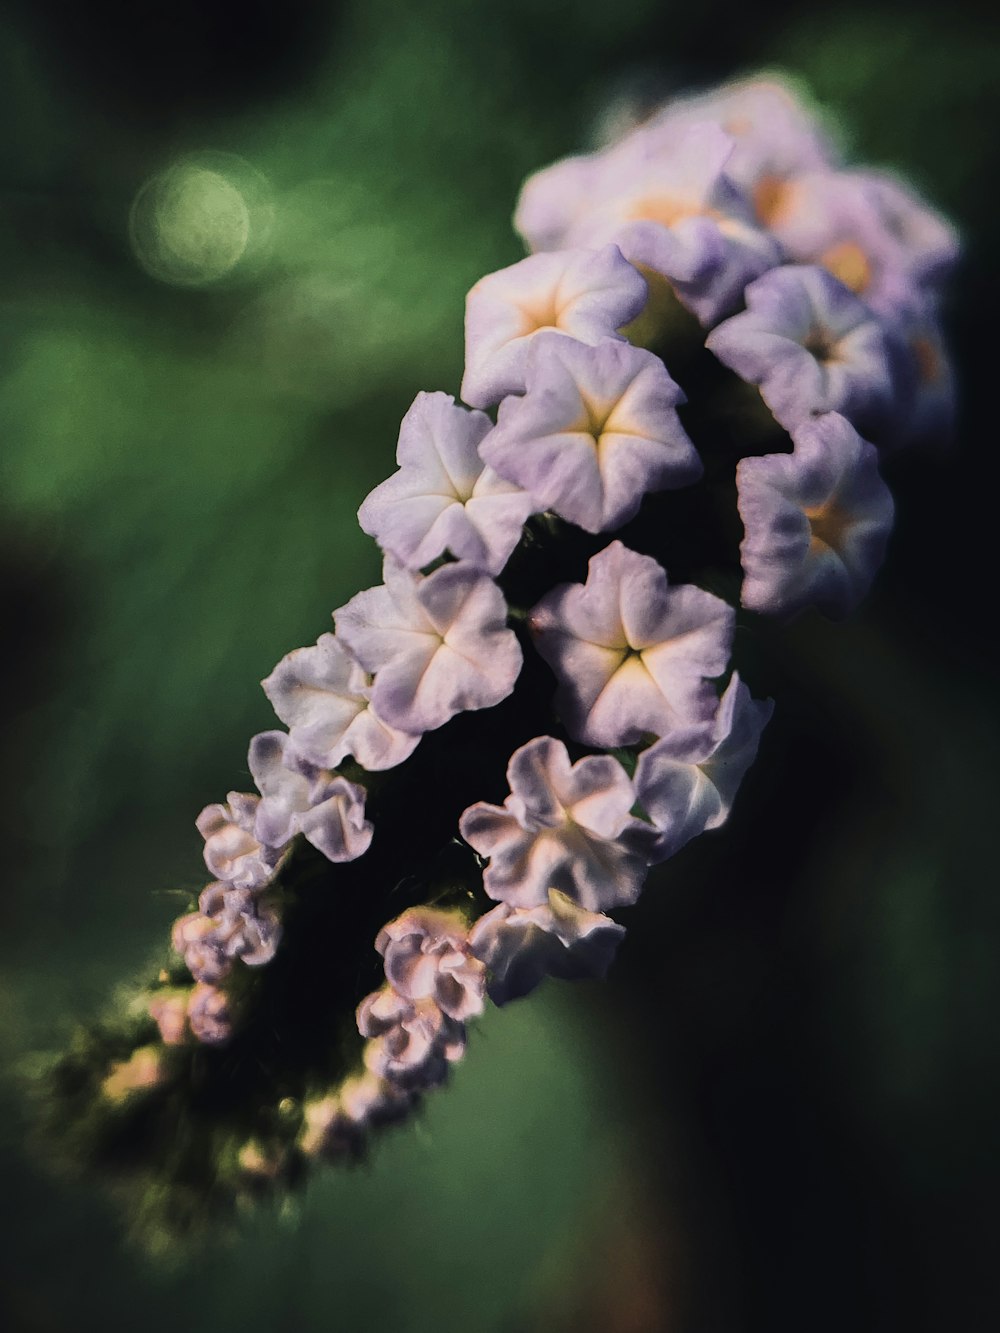 white and purple flower in tilt shift lens